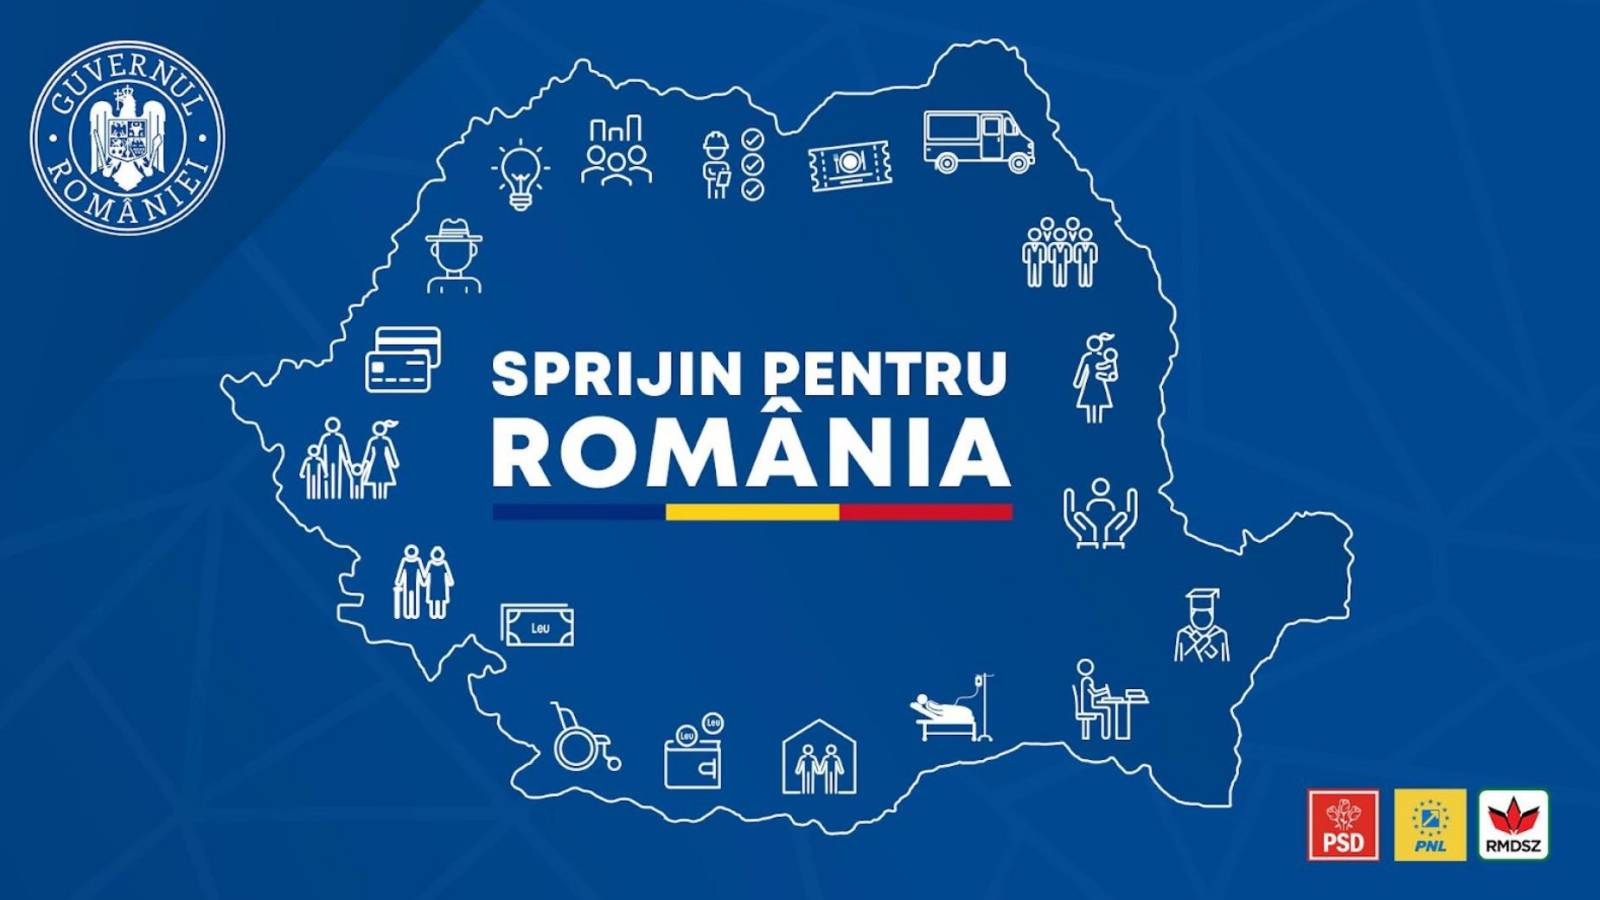 Nye foranstaltninger vedtaget Rumæniens regeringsstøtteprogram